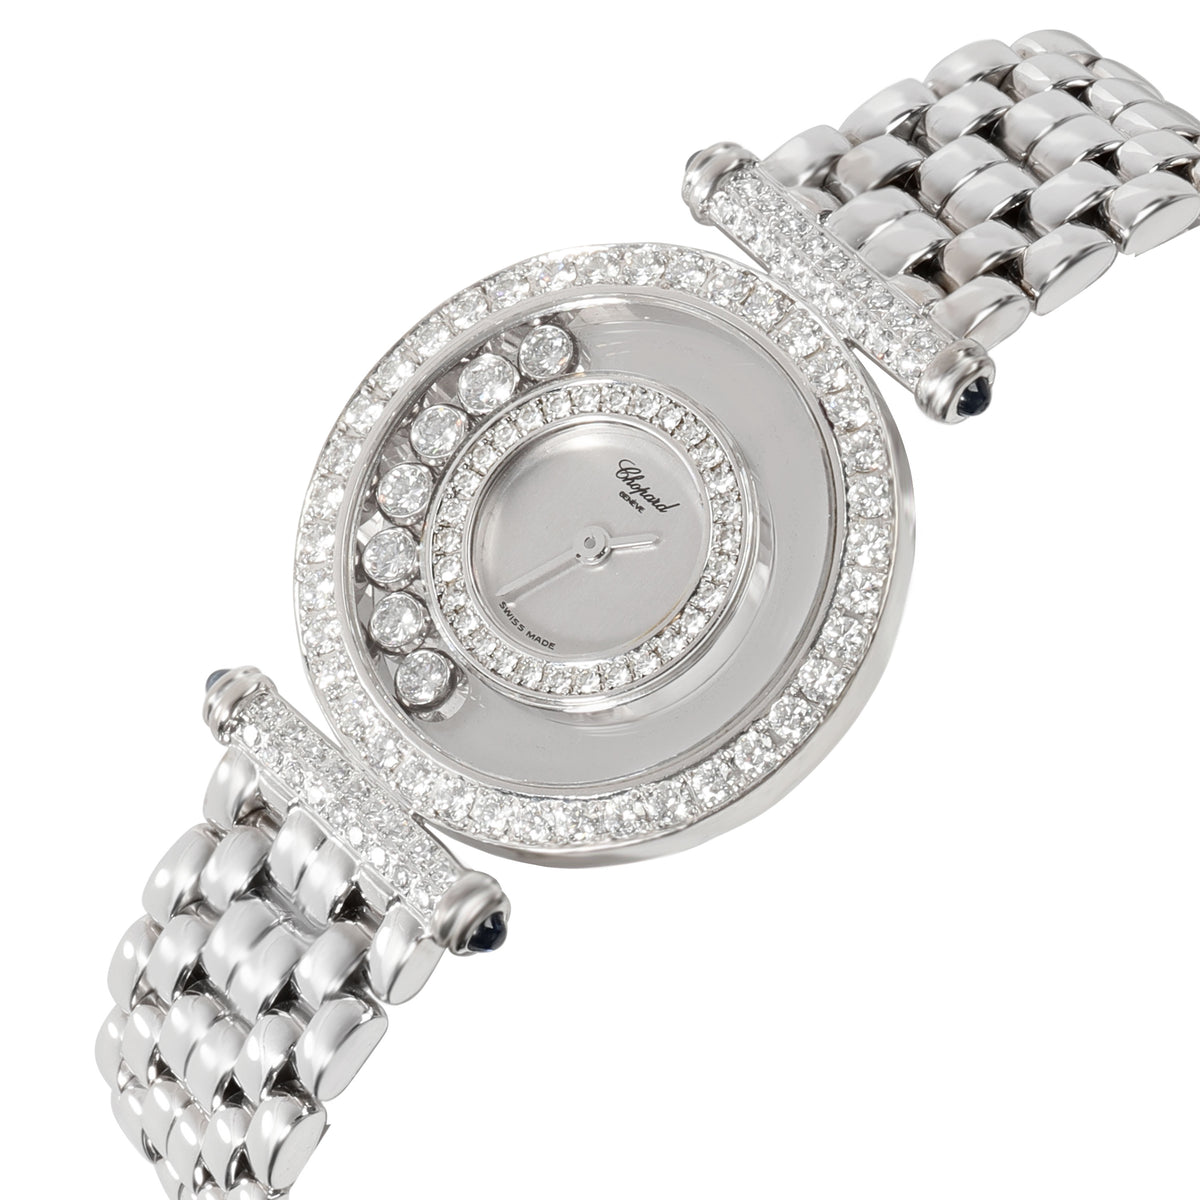 Chopard Happy Diamonds 4118 1 Women's Watch in 18kt White Gold